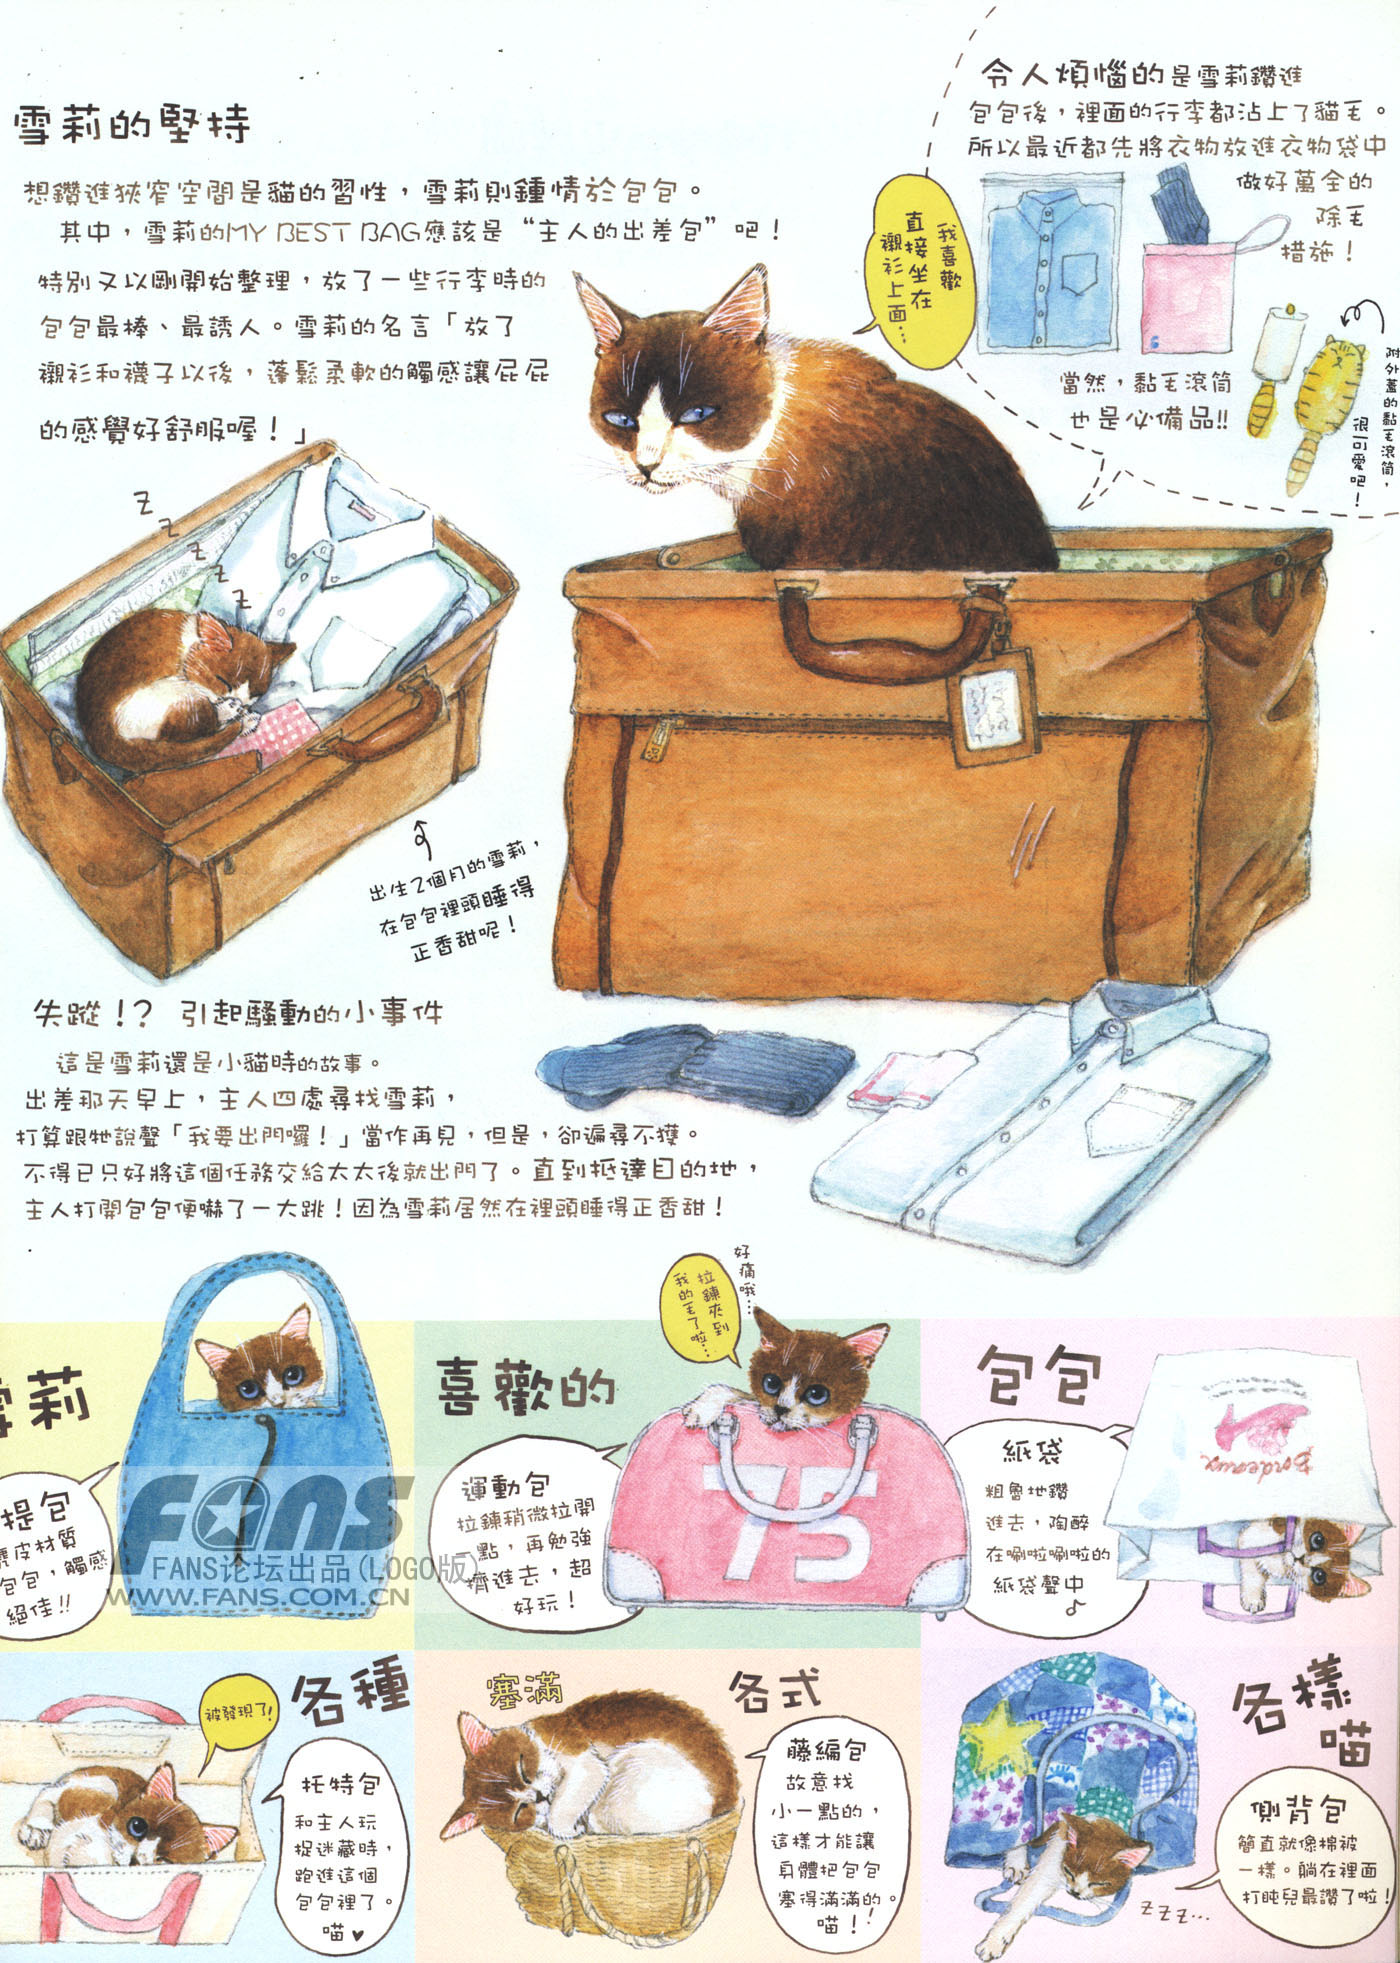 猫漫画图片大全-猫猫萌图-屈阿零可爱屋